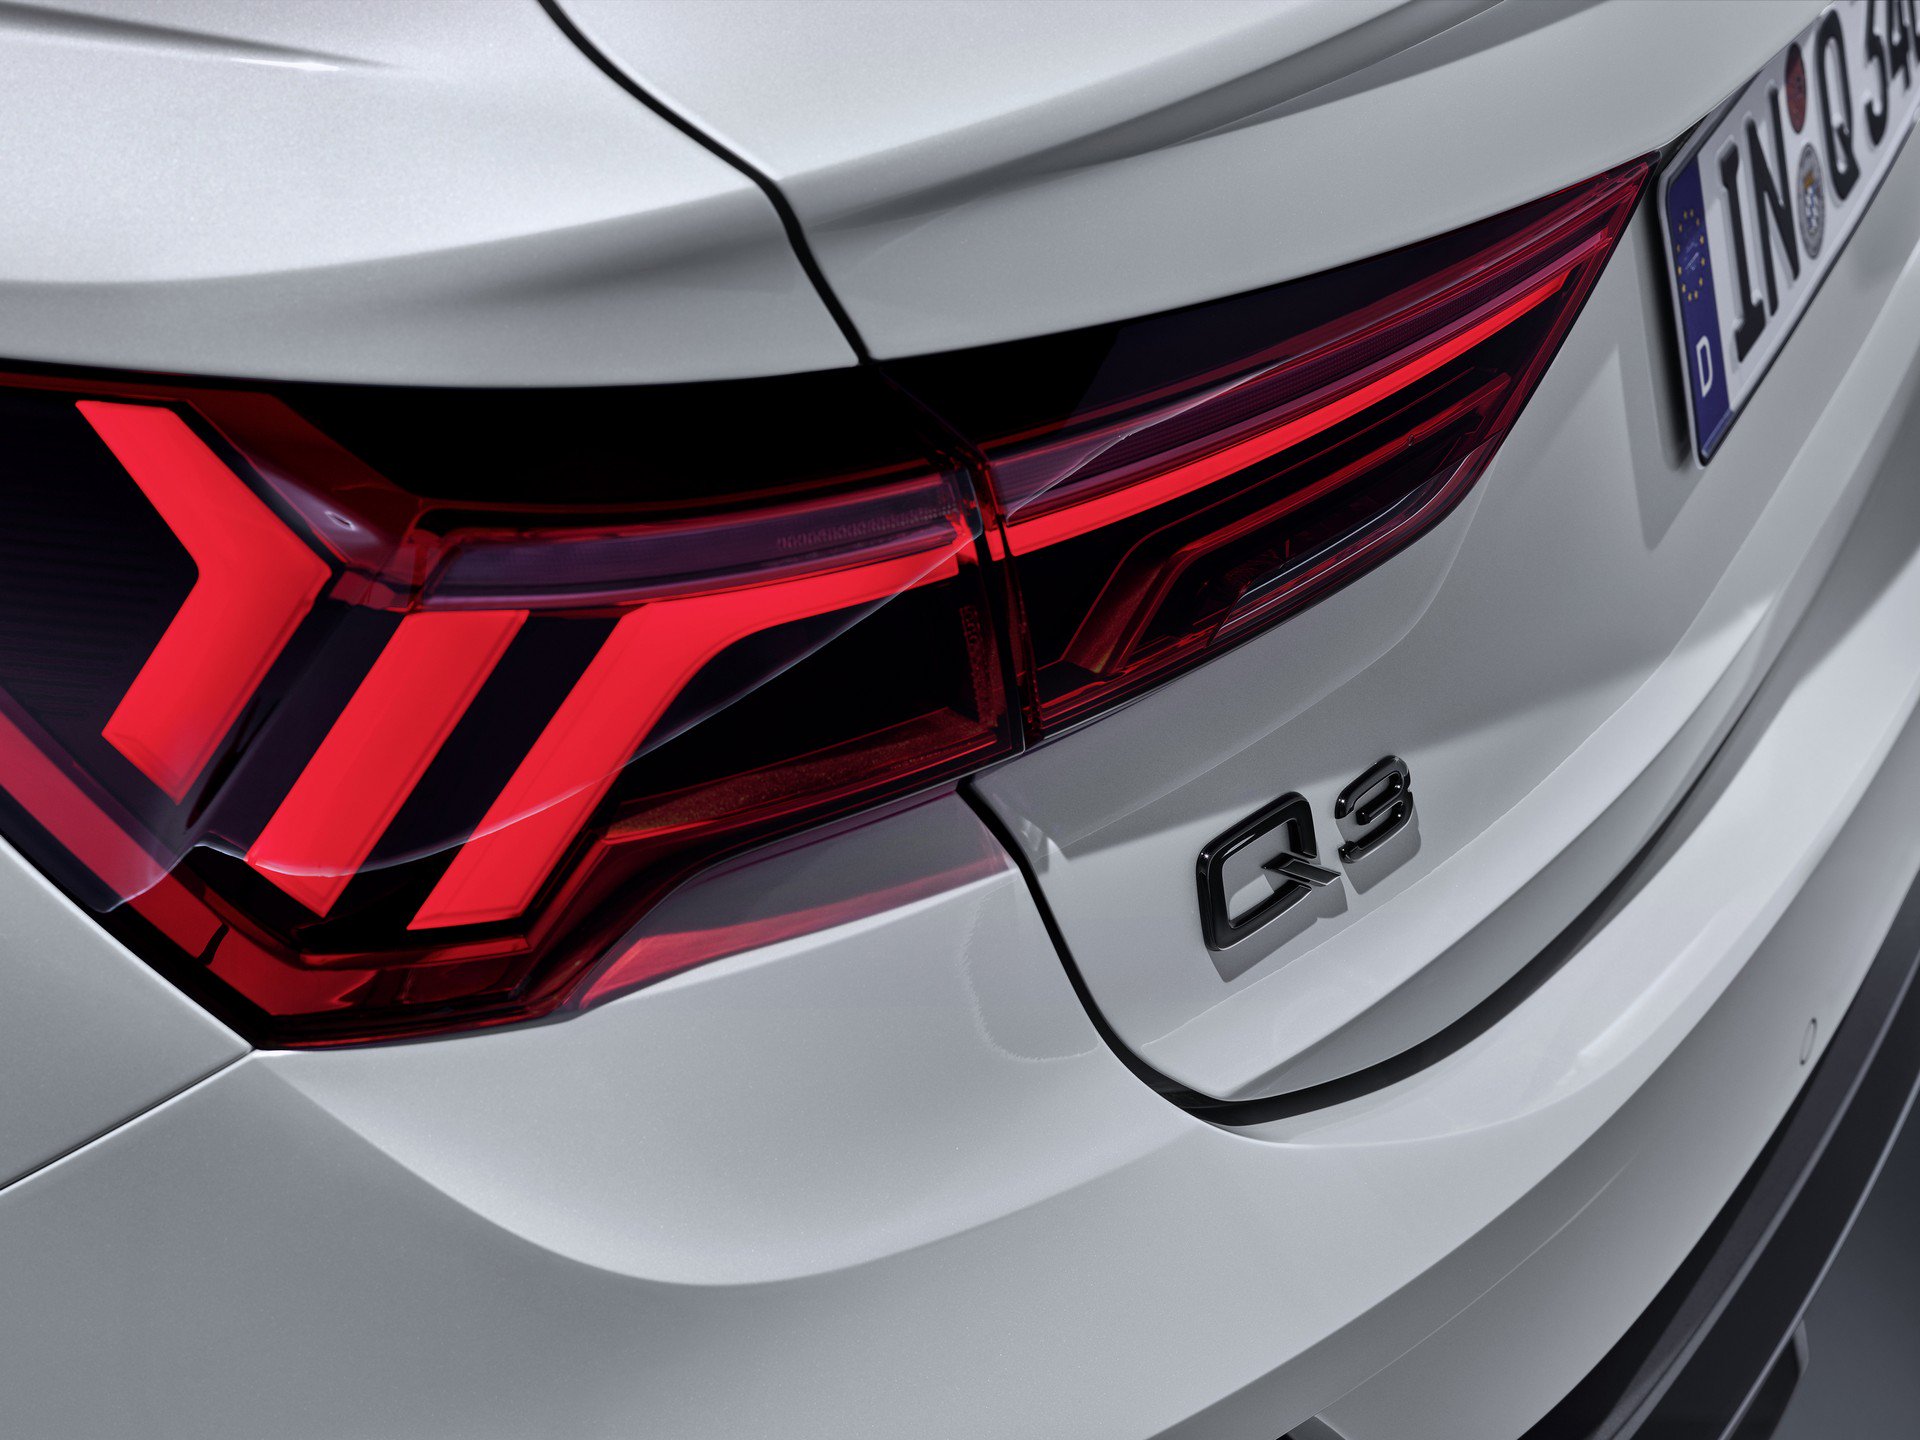 2019 Audi Q3 Sportback tanıtıldı: İşte özellikleri ve fiyatı